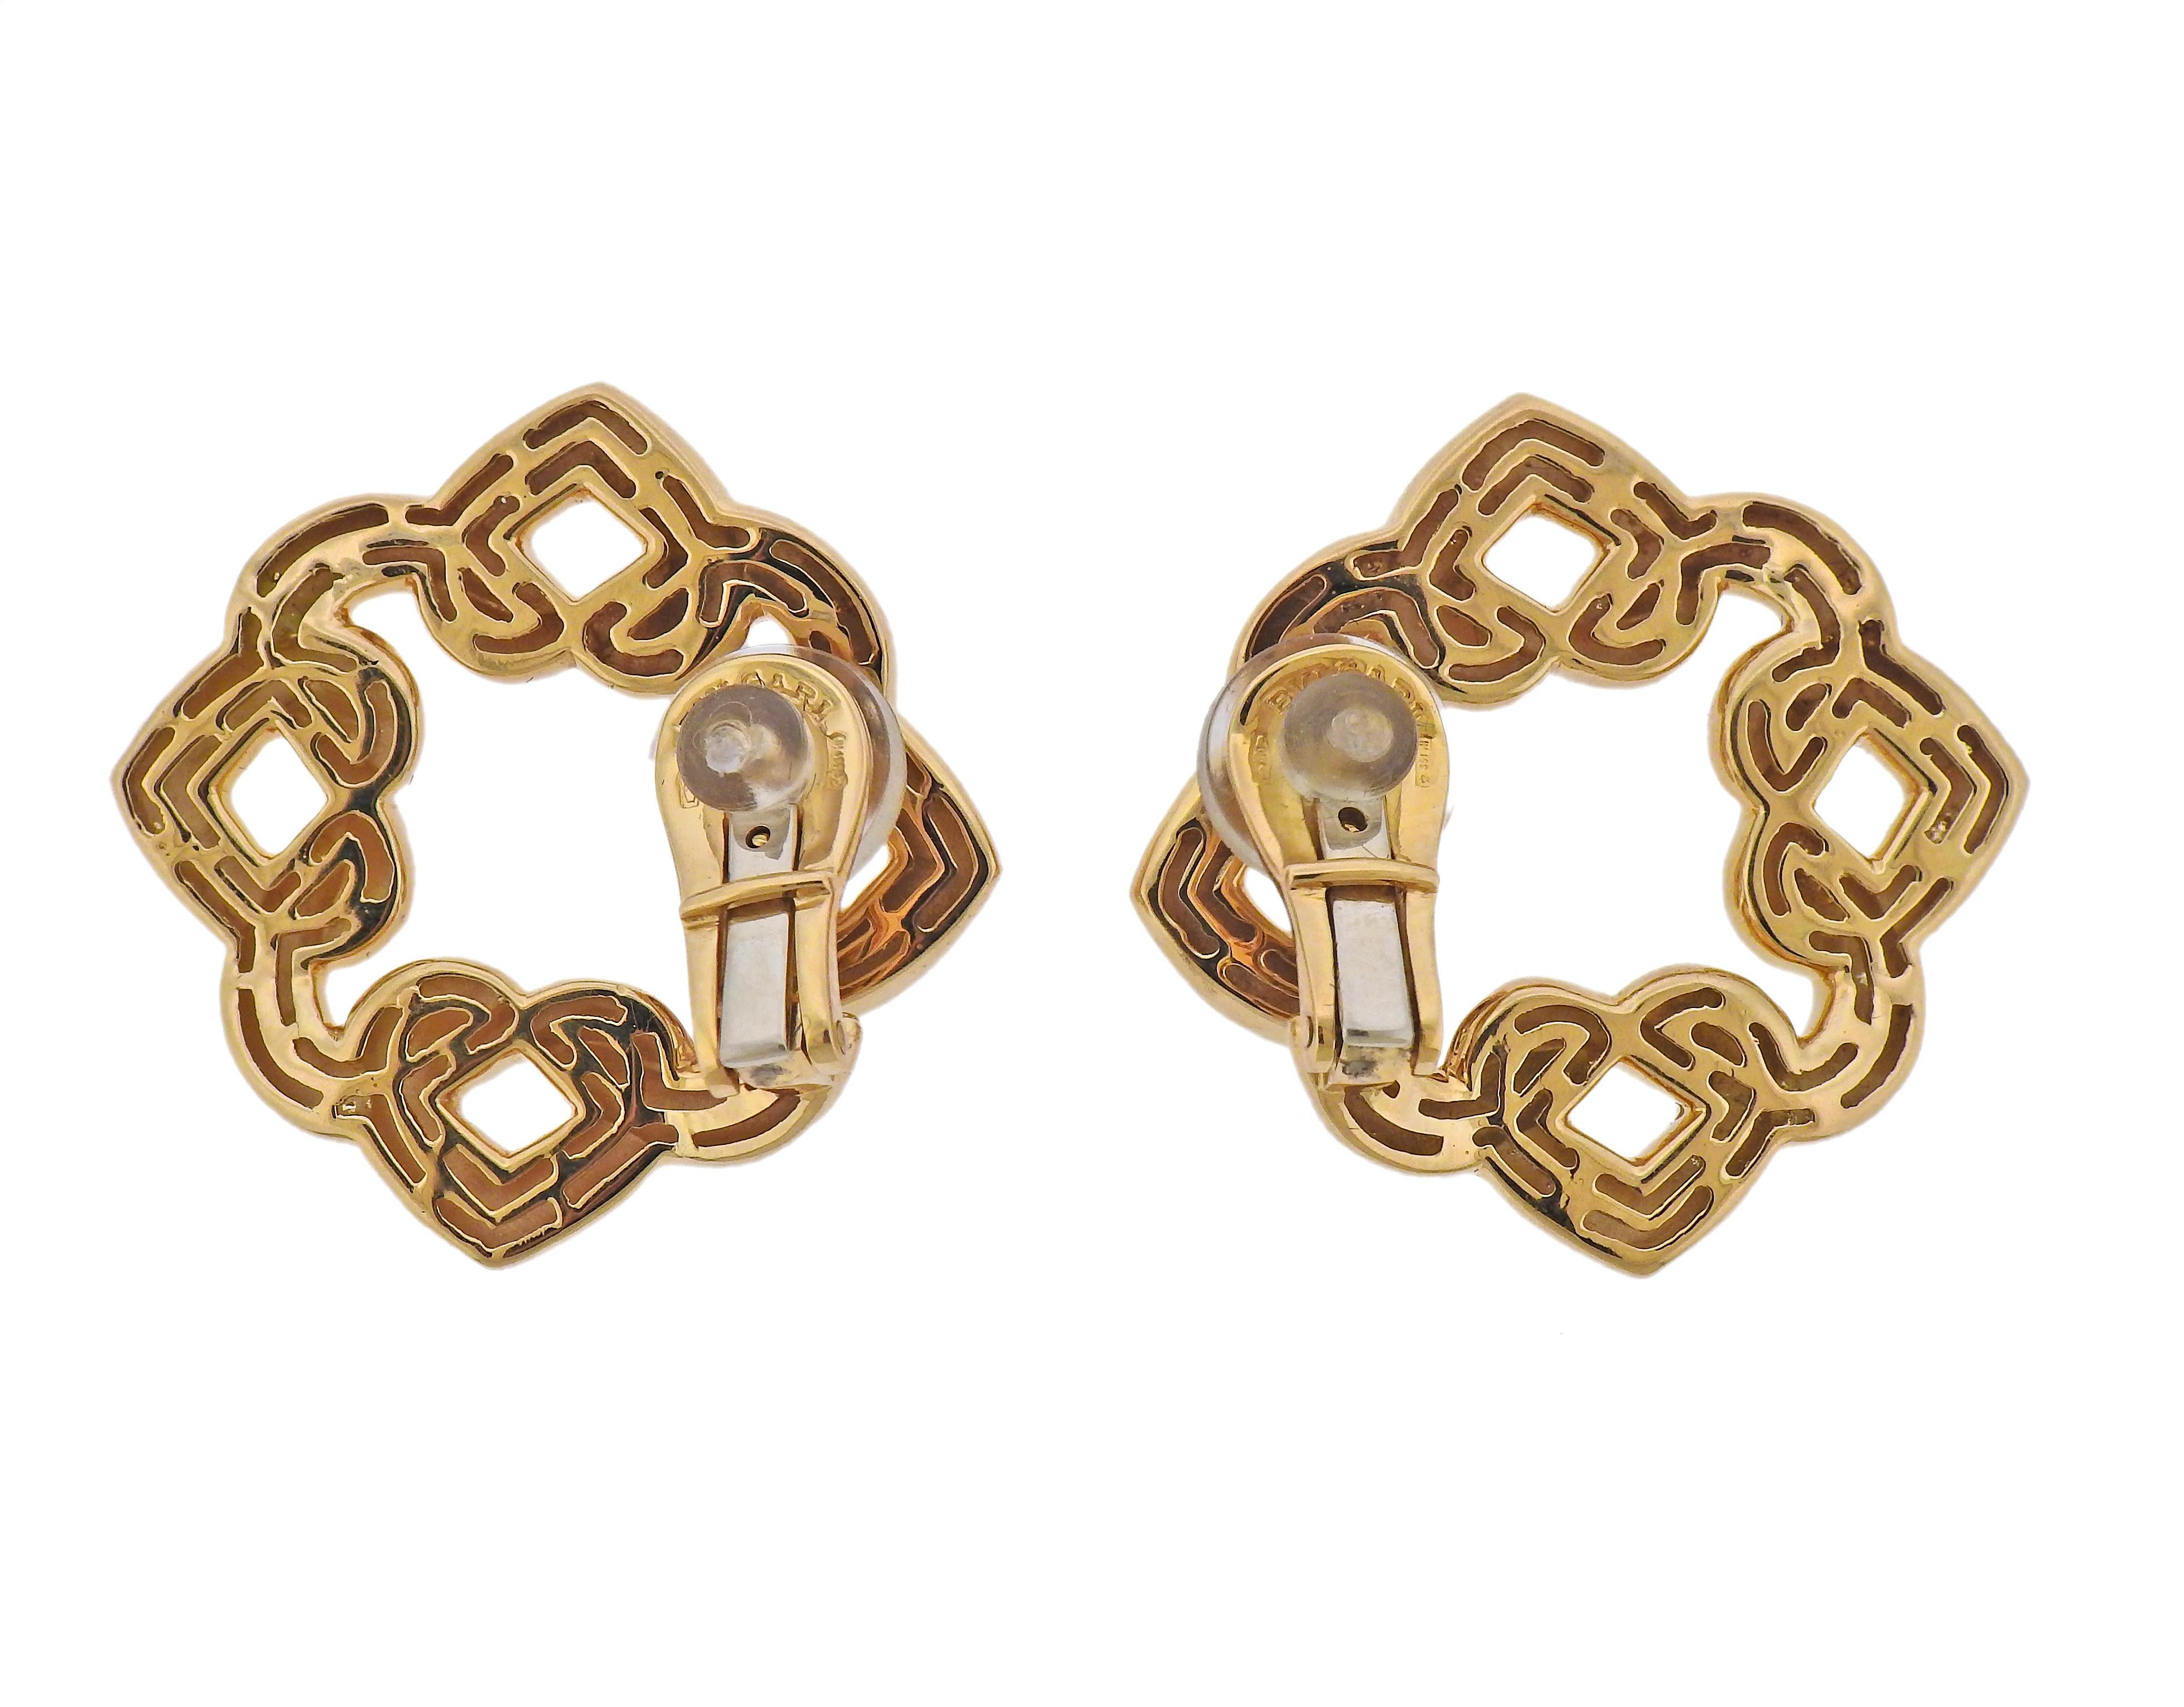 Pair of 18k yellow gold Bvlgari Doppio Cuore earrings. Measuring 26mm x 26mm. Marked: Bvlgari, 750, Italian mark. Weight - 18.2 grams.